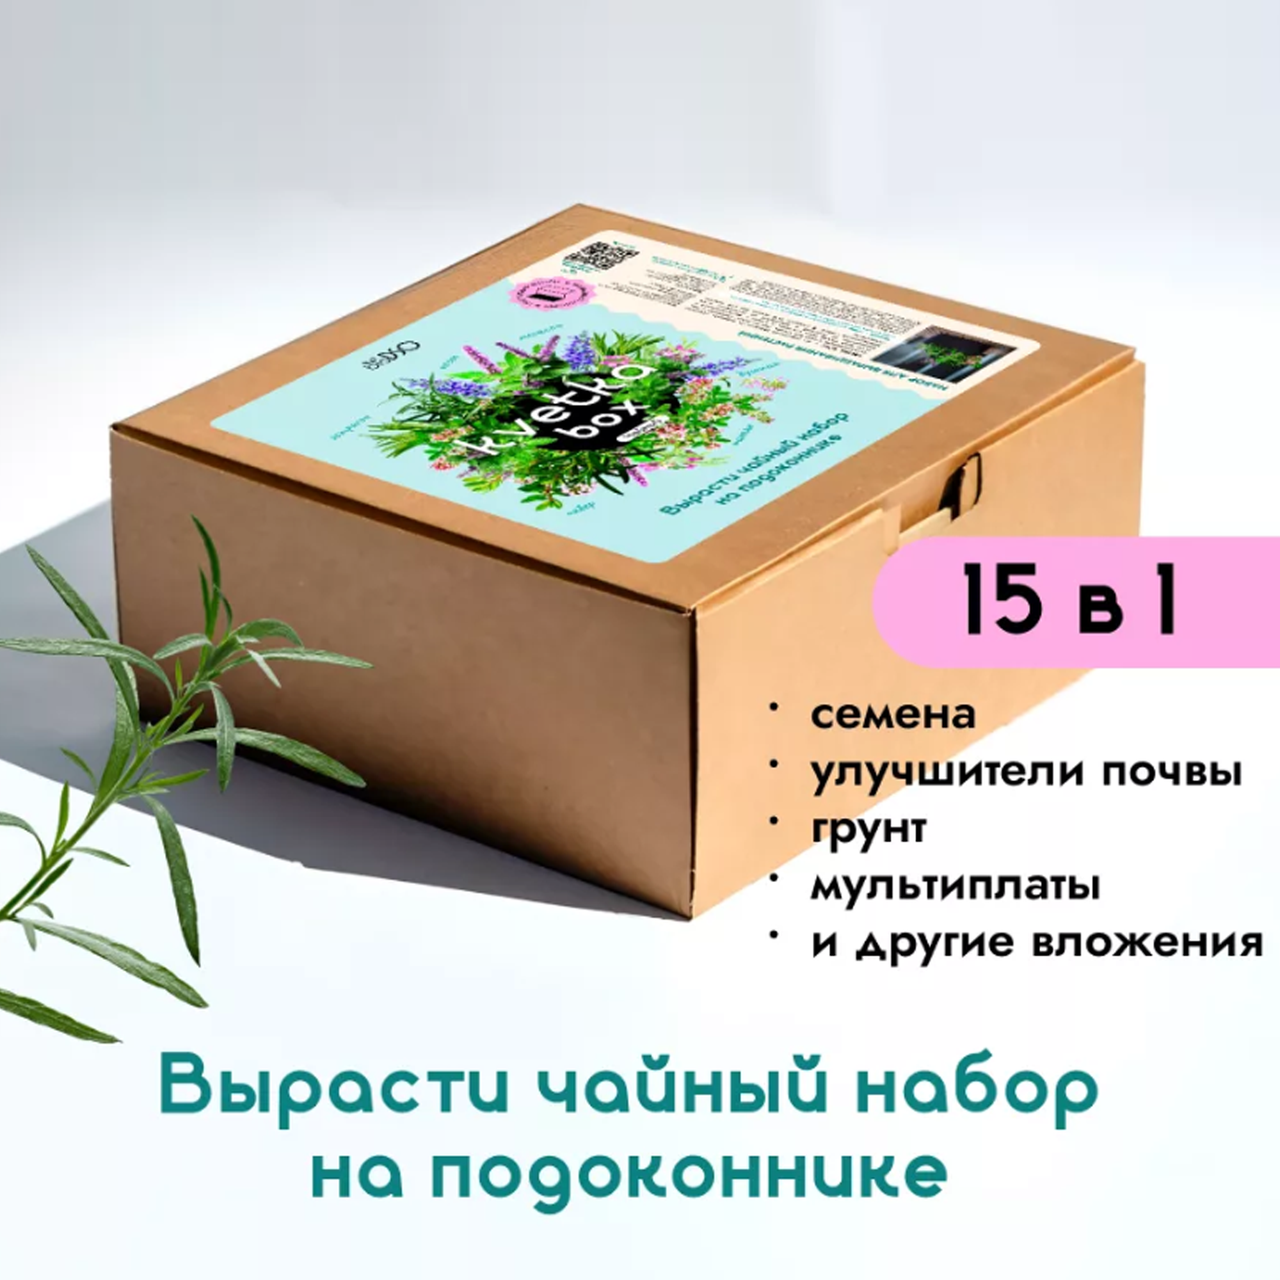 Подарочный набор kvetka box. Чайный, bioDSO